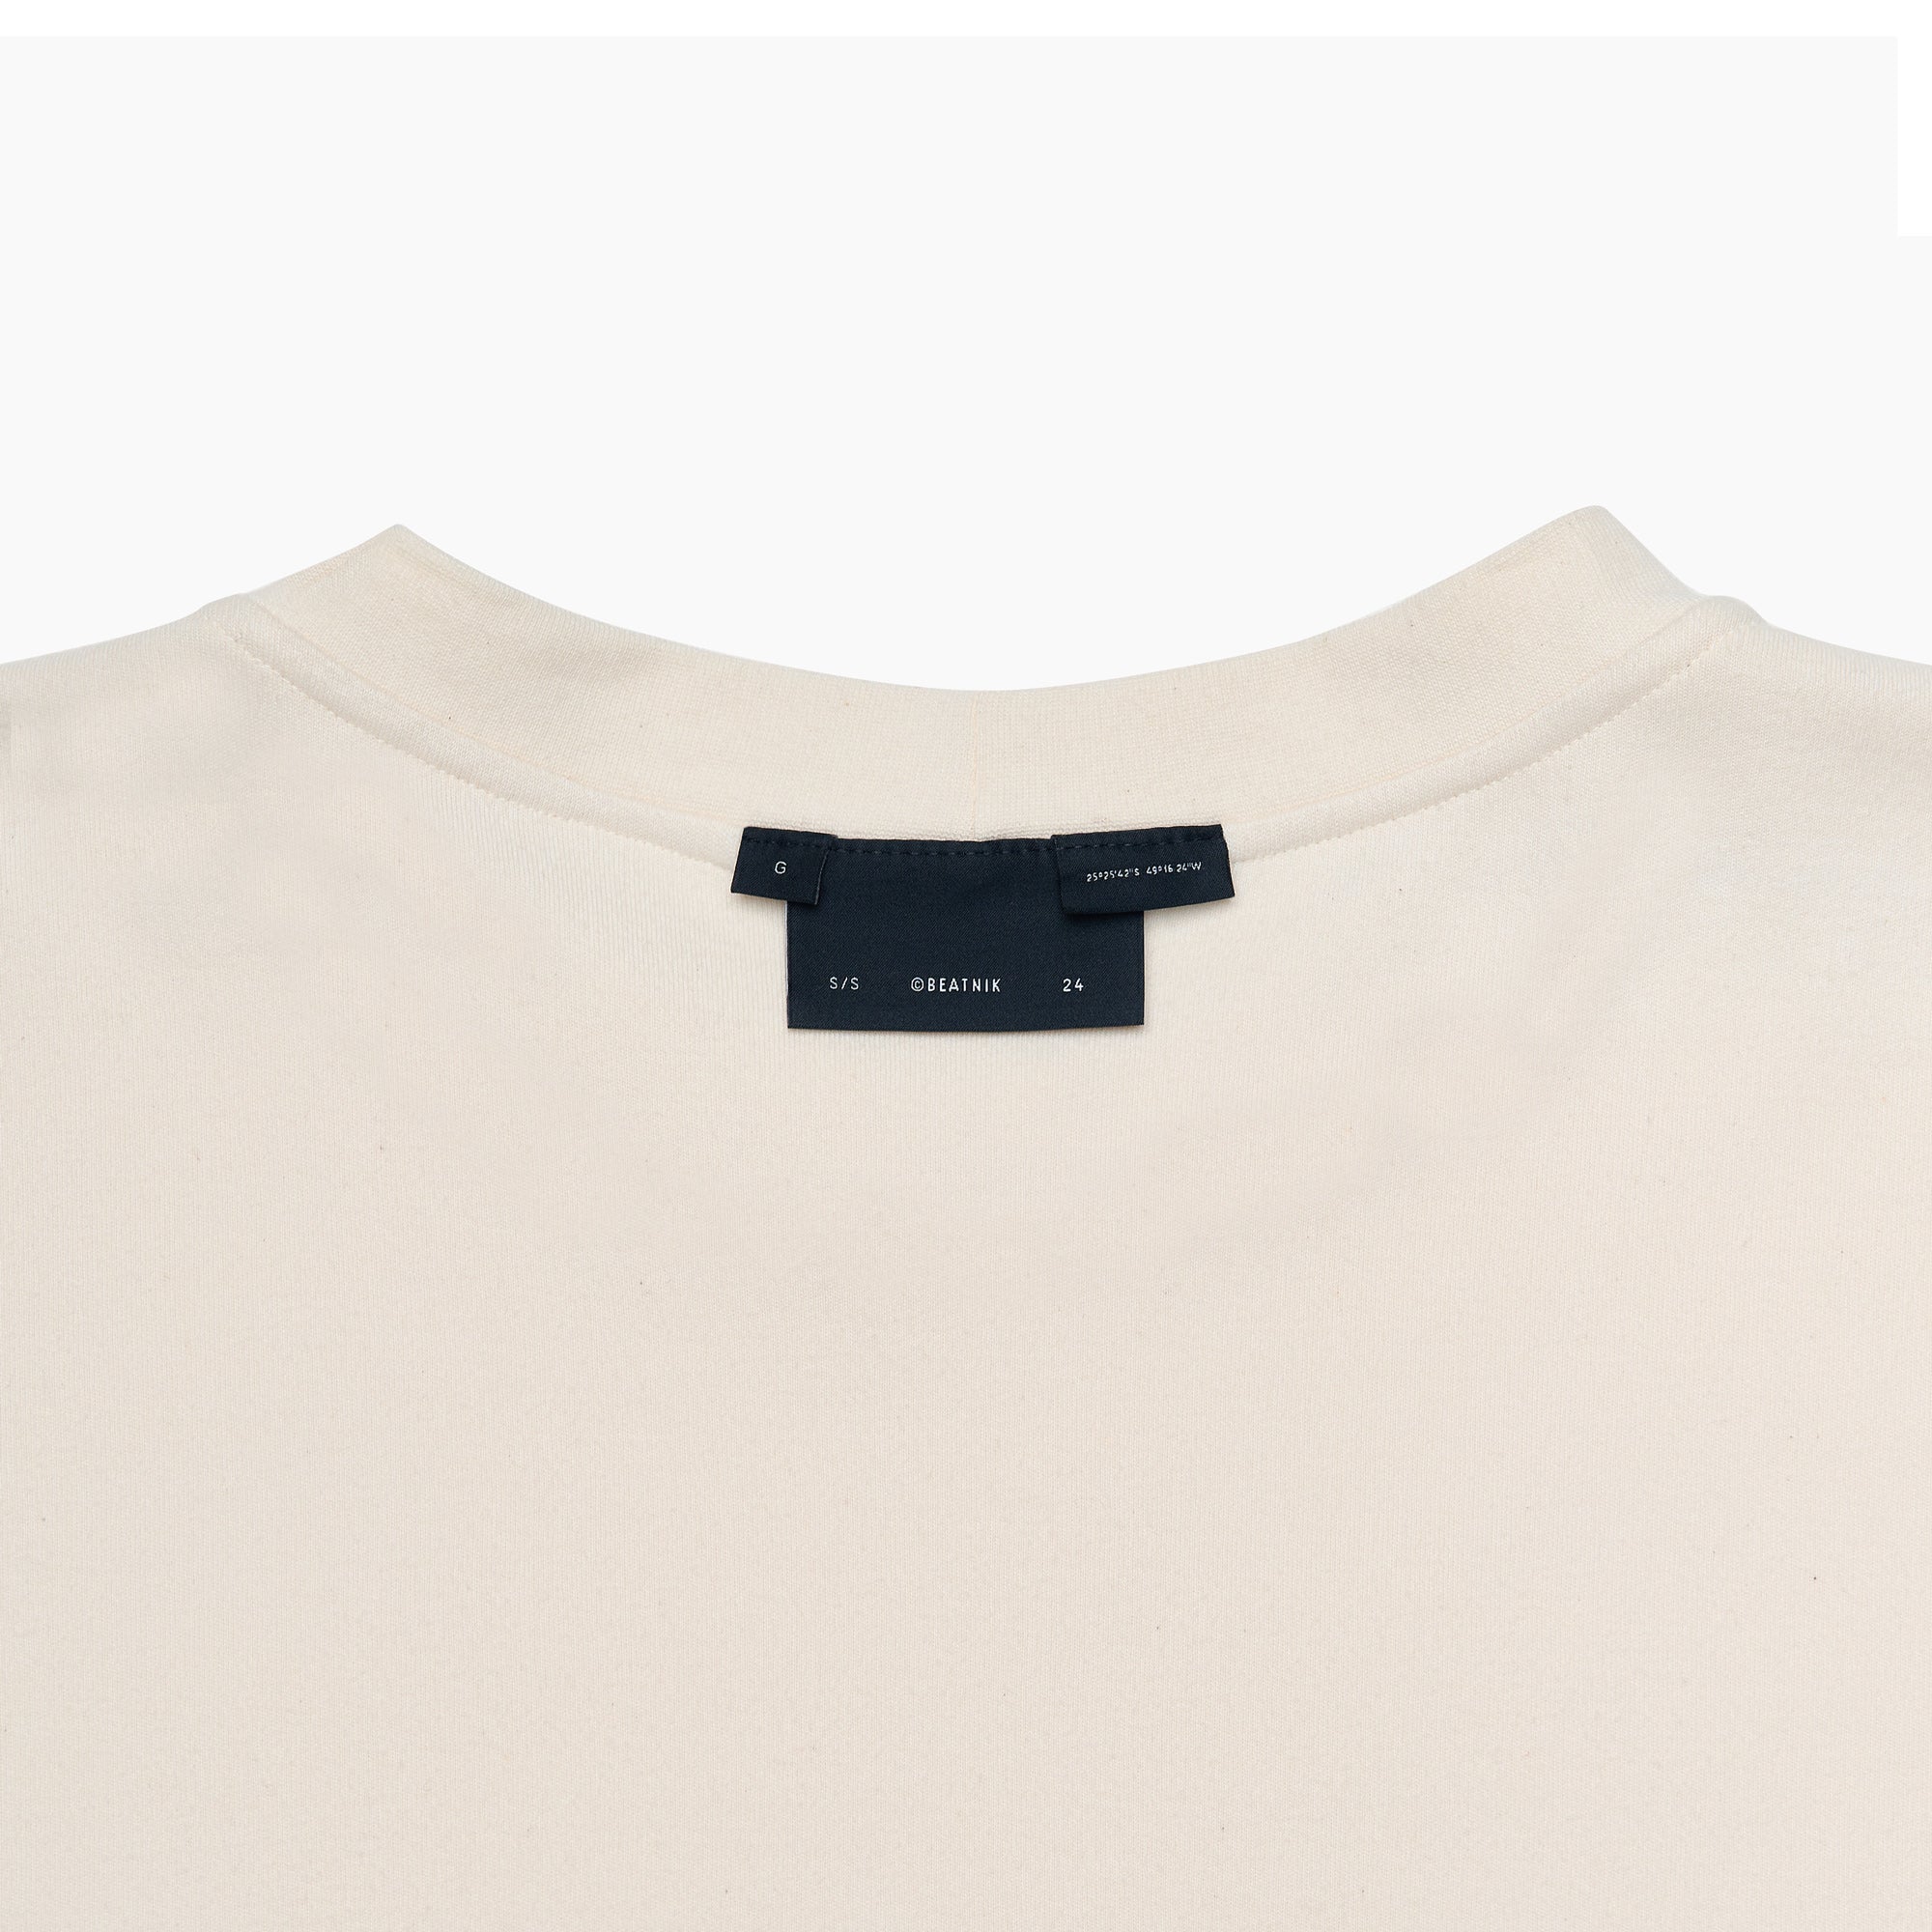 Camiseta Essentials Embroided – Off white